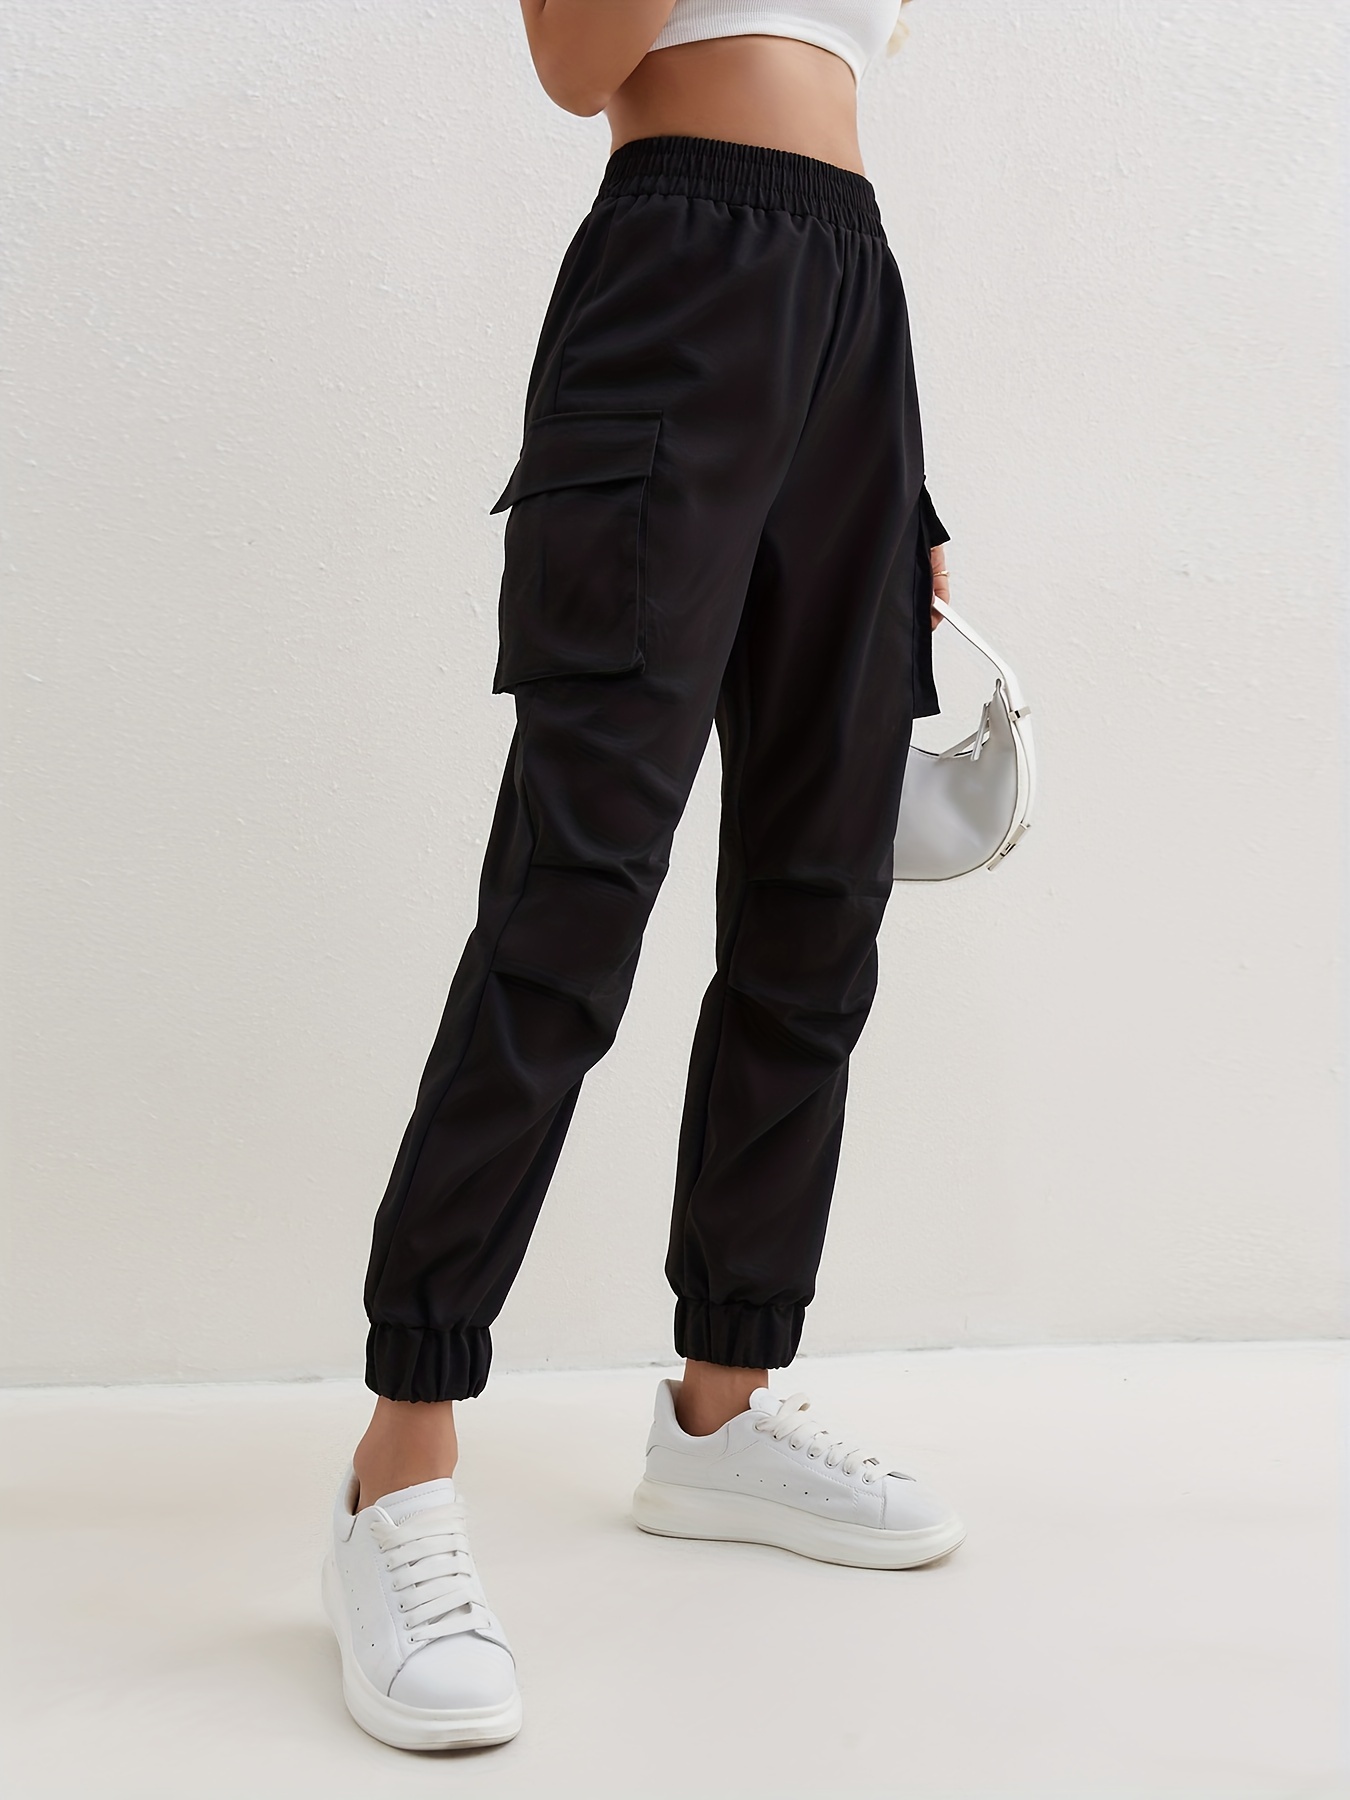 Pantalon De Jogging Cargo Taille Haute Pour Femme, Poches Zippées